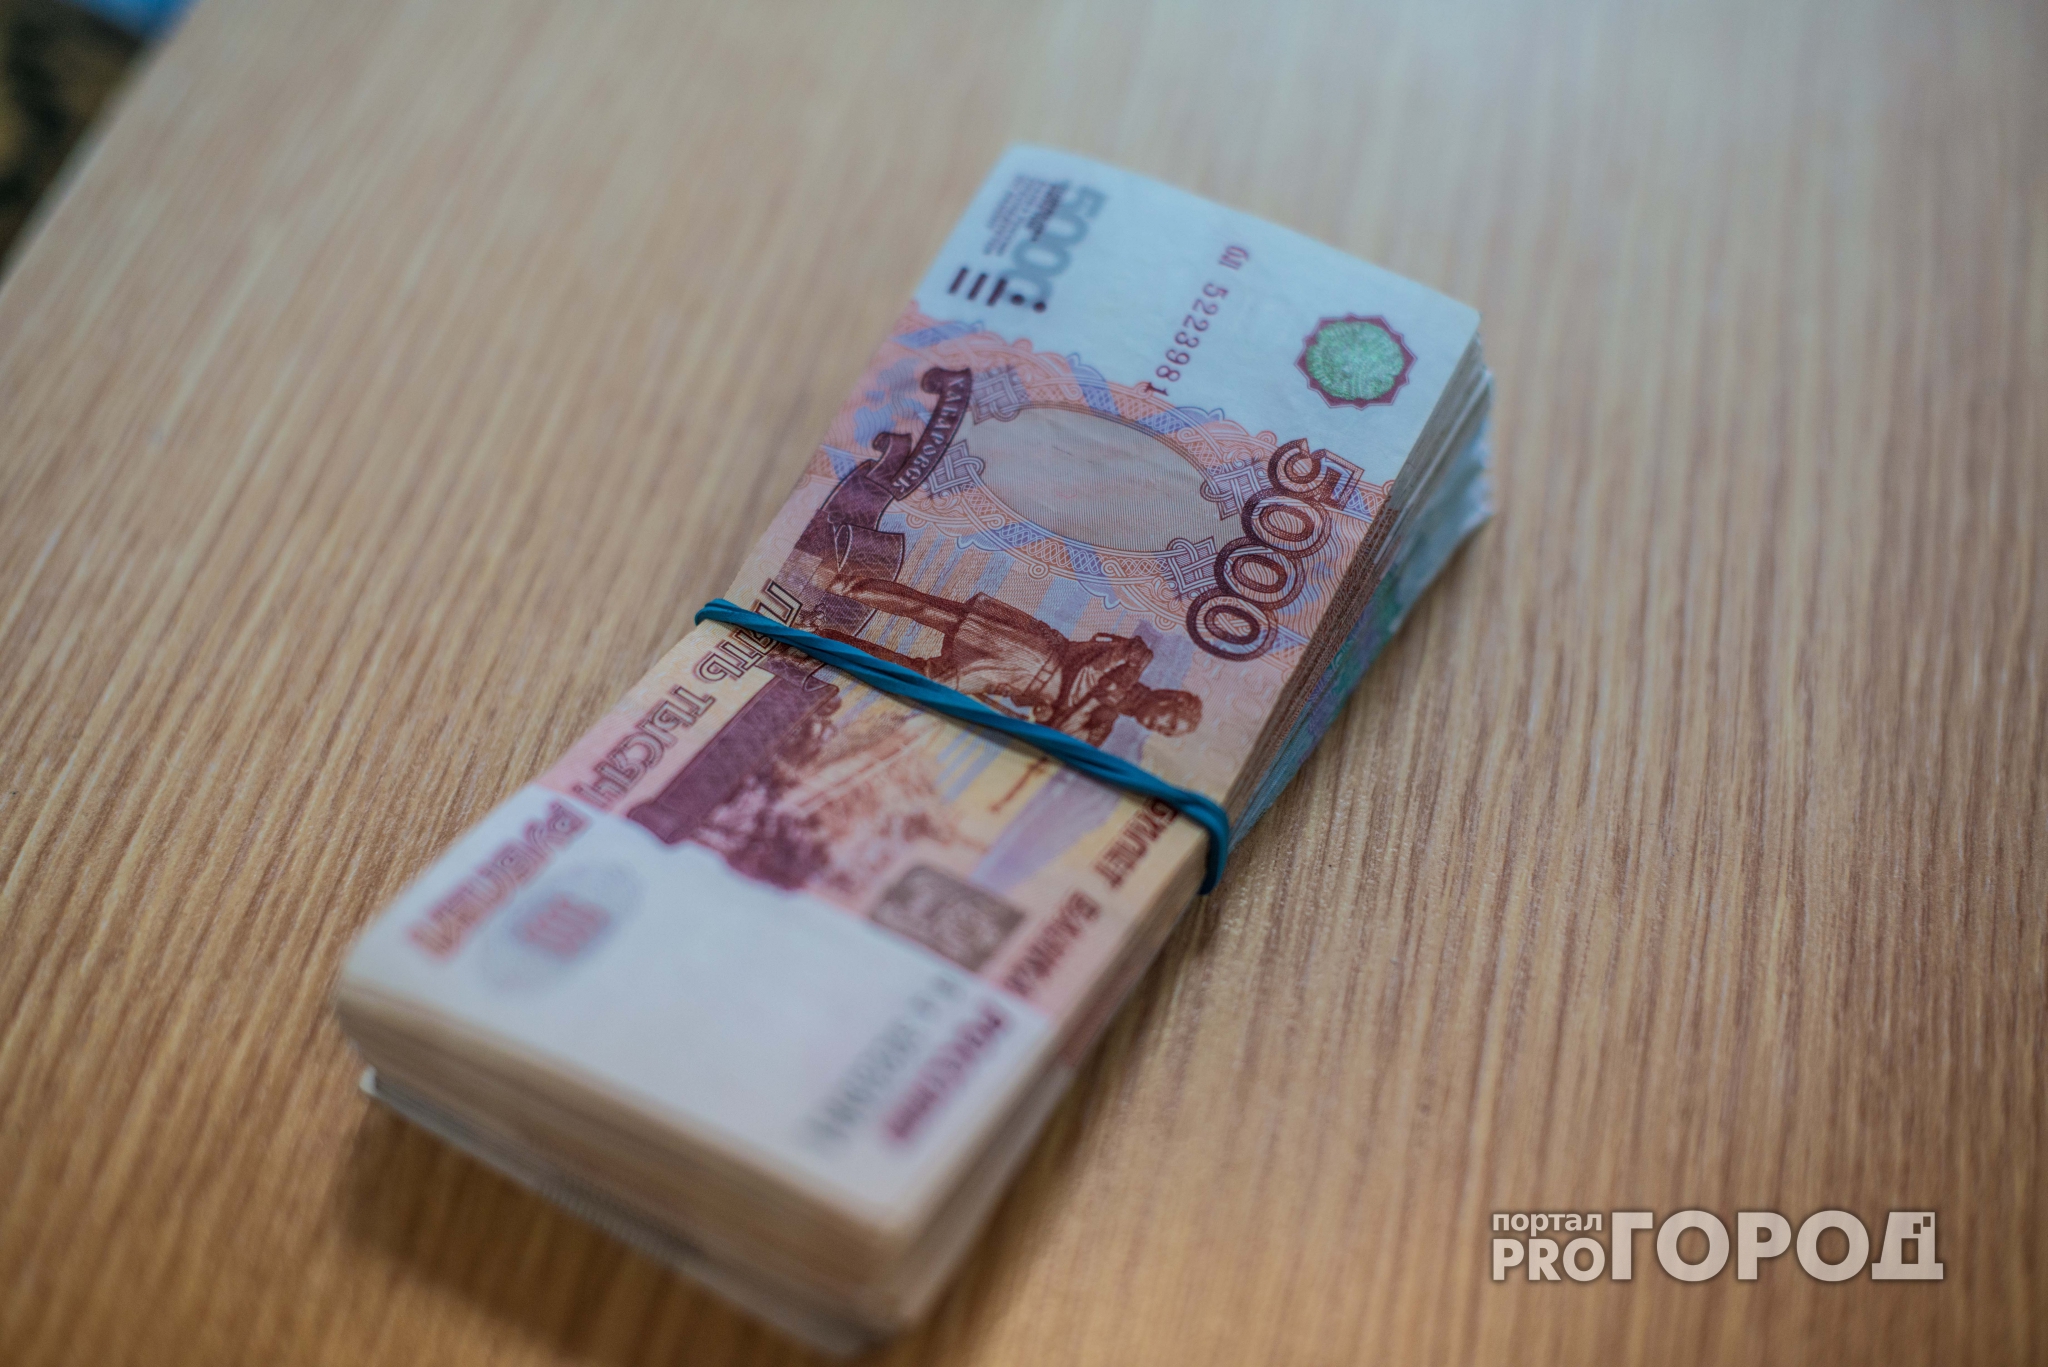 Директор нижегородской фирмы избил и "поставил на счетчик" брата должника